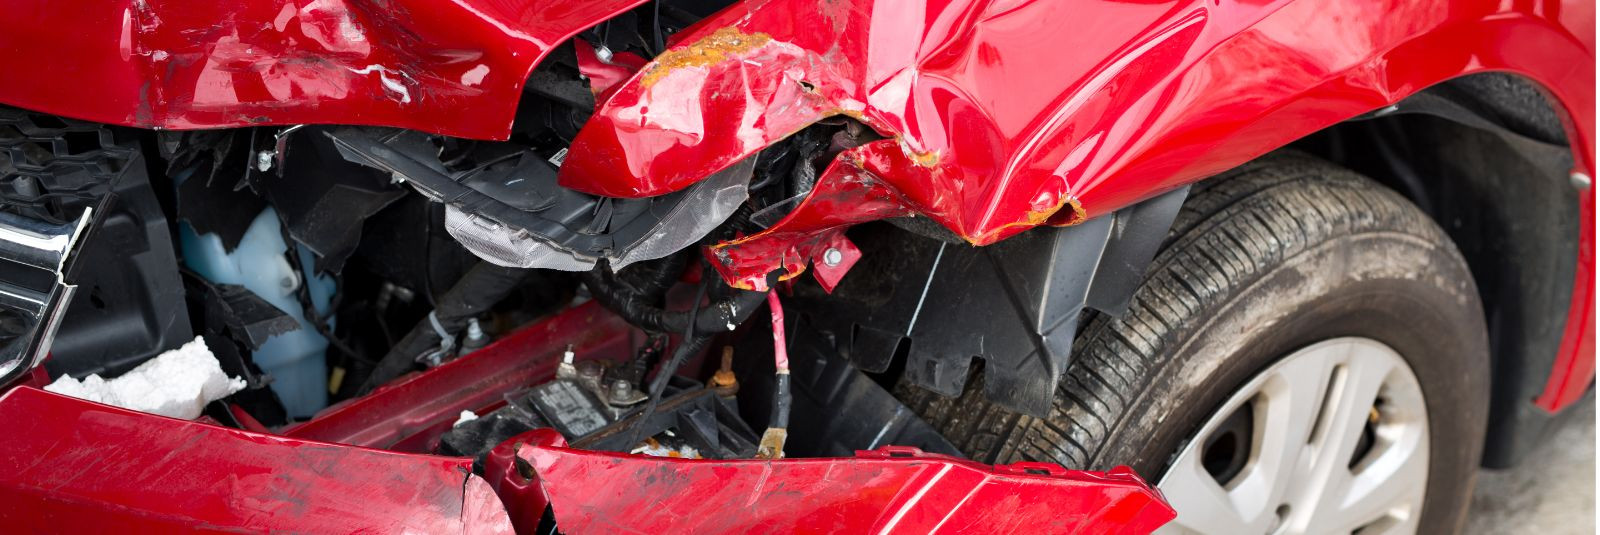 Õnnetused juhtuvad ootamatult ja kahju teie sõidukile võib tunduda tõelise peavaluna. Olgu tegemist väikese kriimustuse, kokkupõrke või ilmastikuoludega põhjust